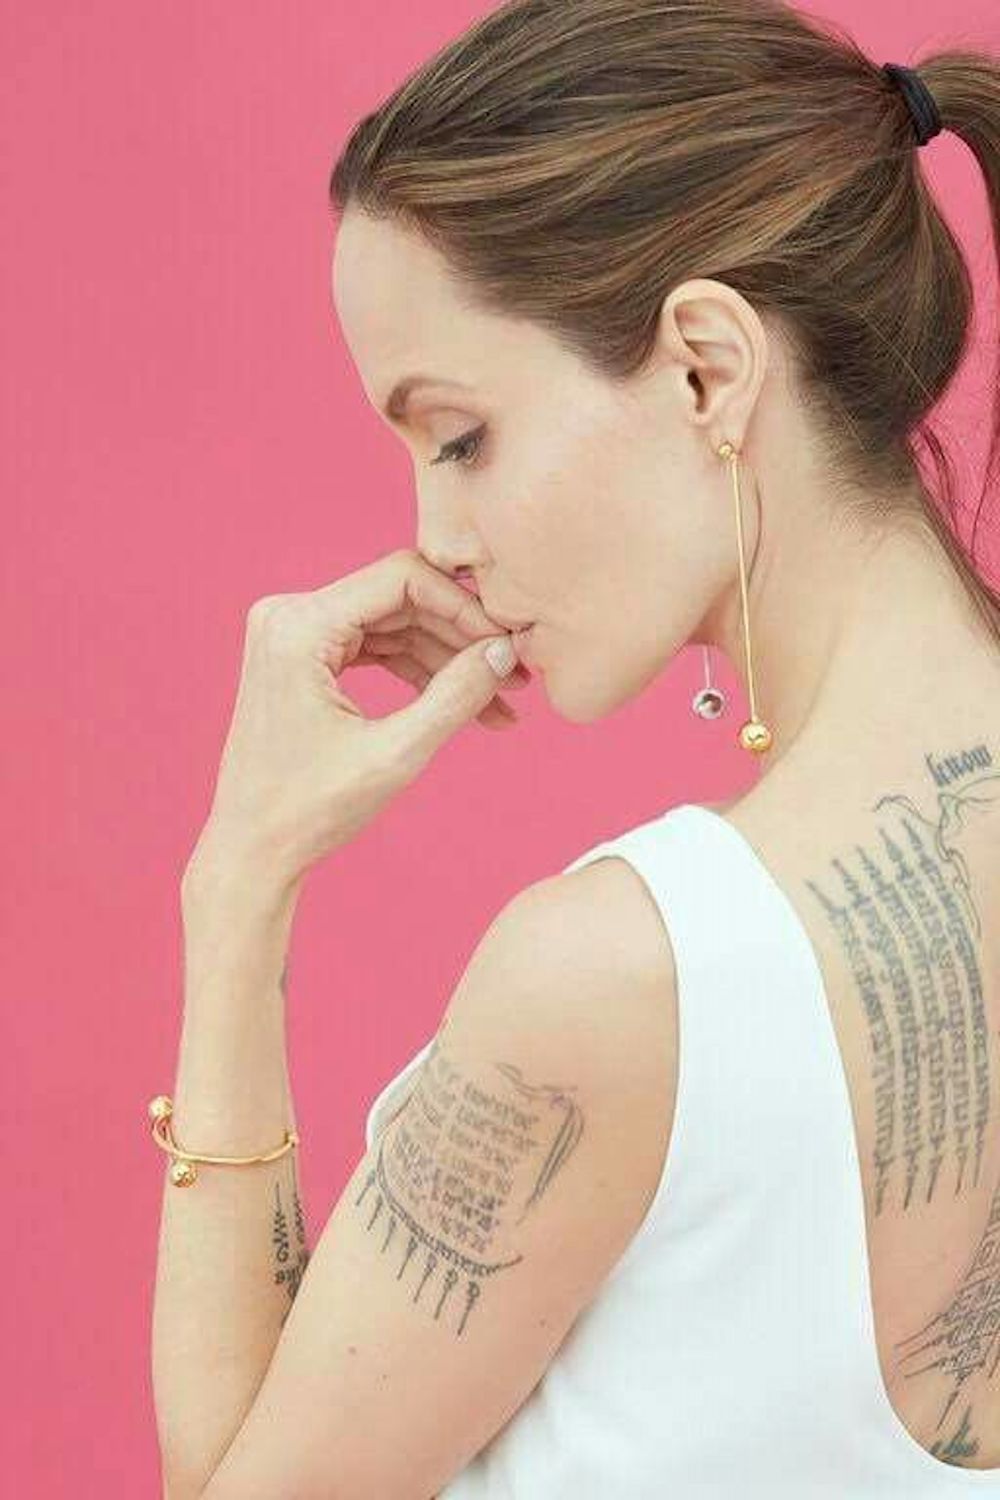 Ý nghĩa tâm linh đằng sau những hình xăm của Angelina Jolie  Harpers  Bazaar